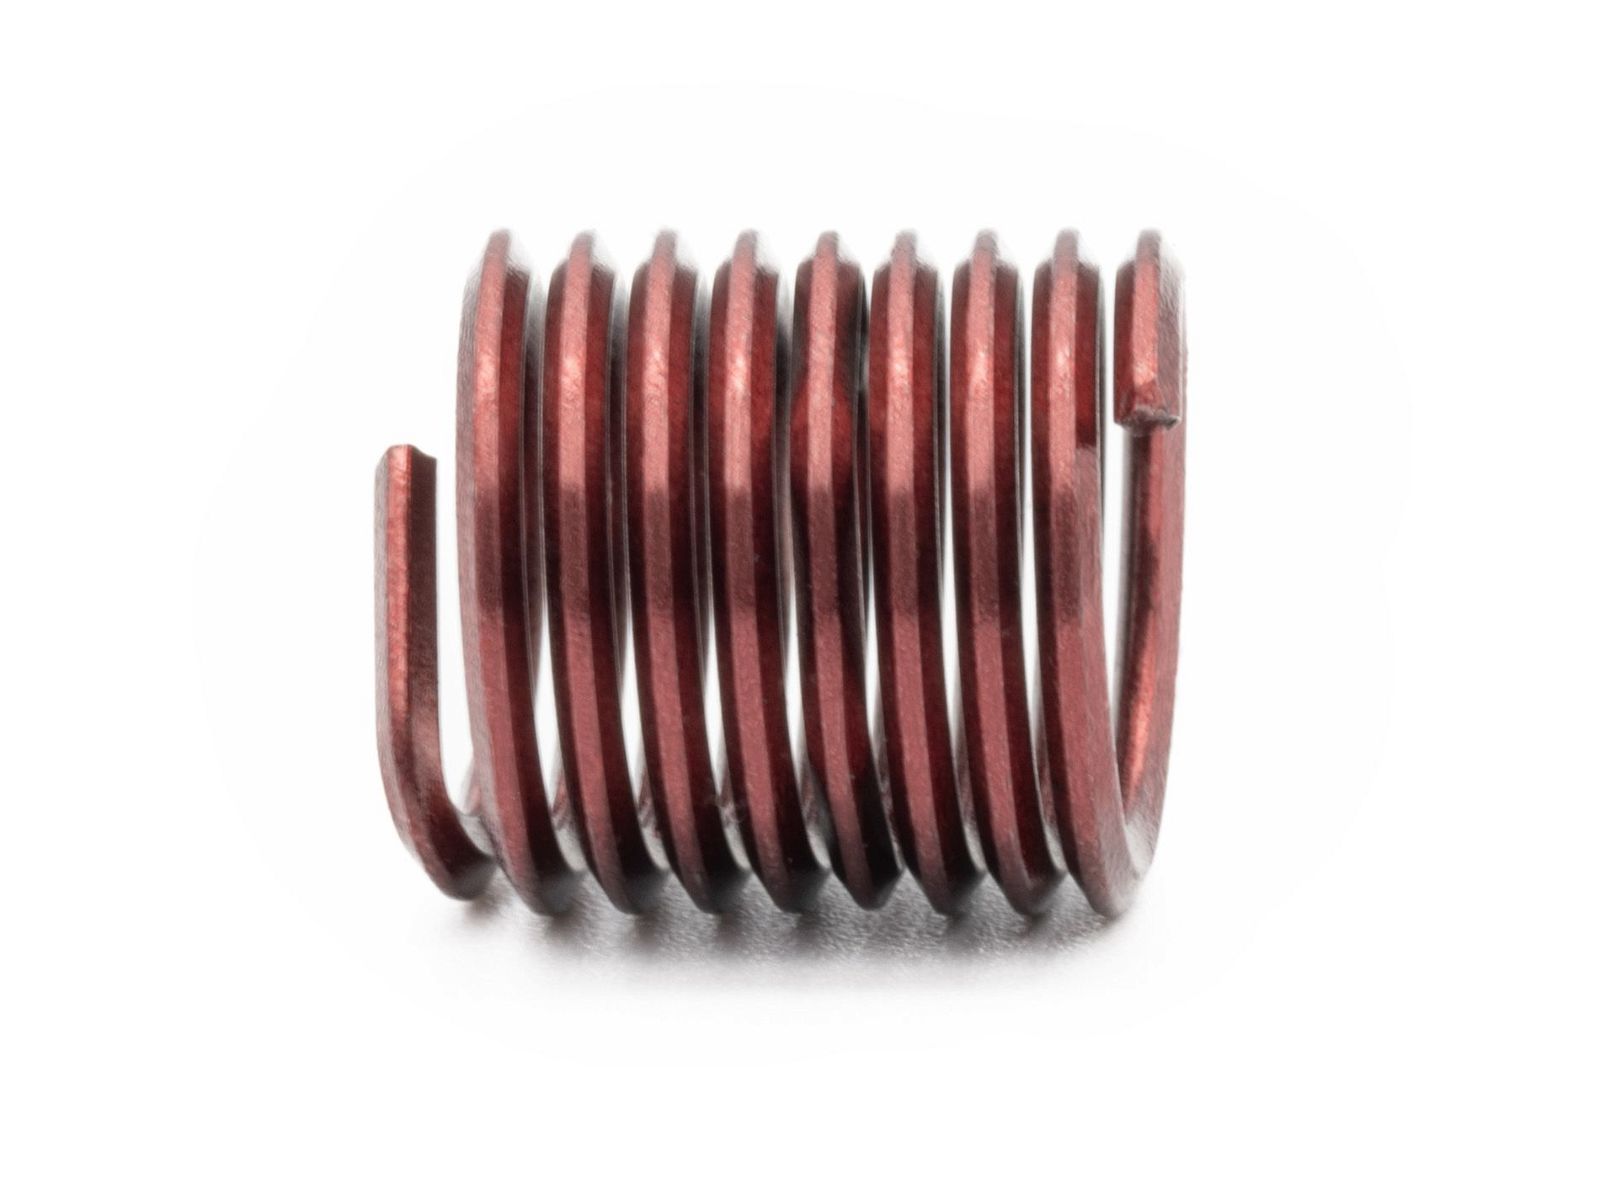 BaerCoil Wire Thread Inserts BSW 1/2 x 12 - 1.5 D (19.05 mm) - screw grip (screw locking) - 100 pcs.